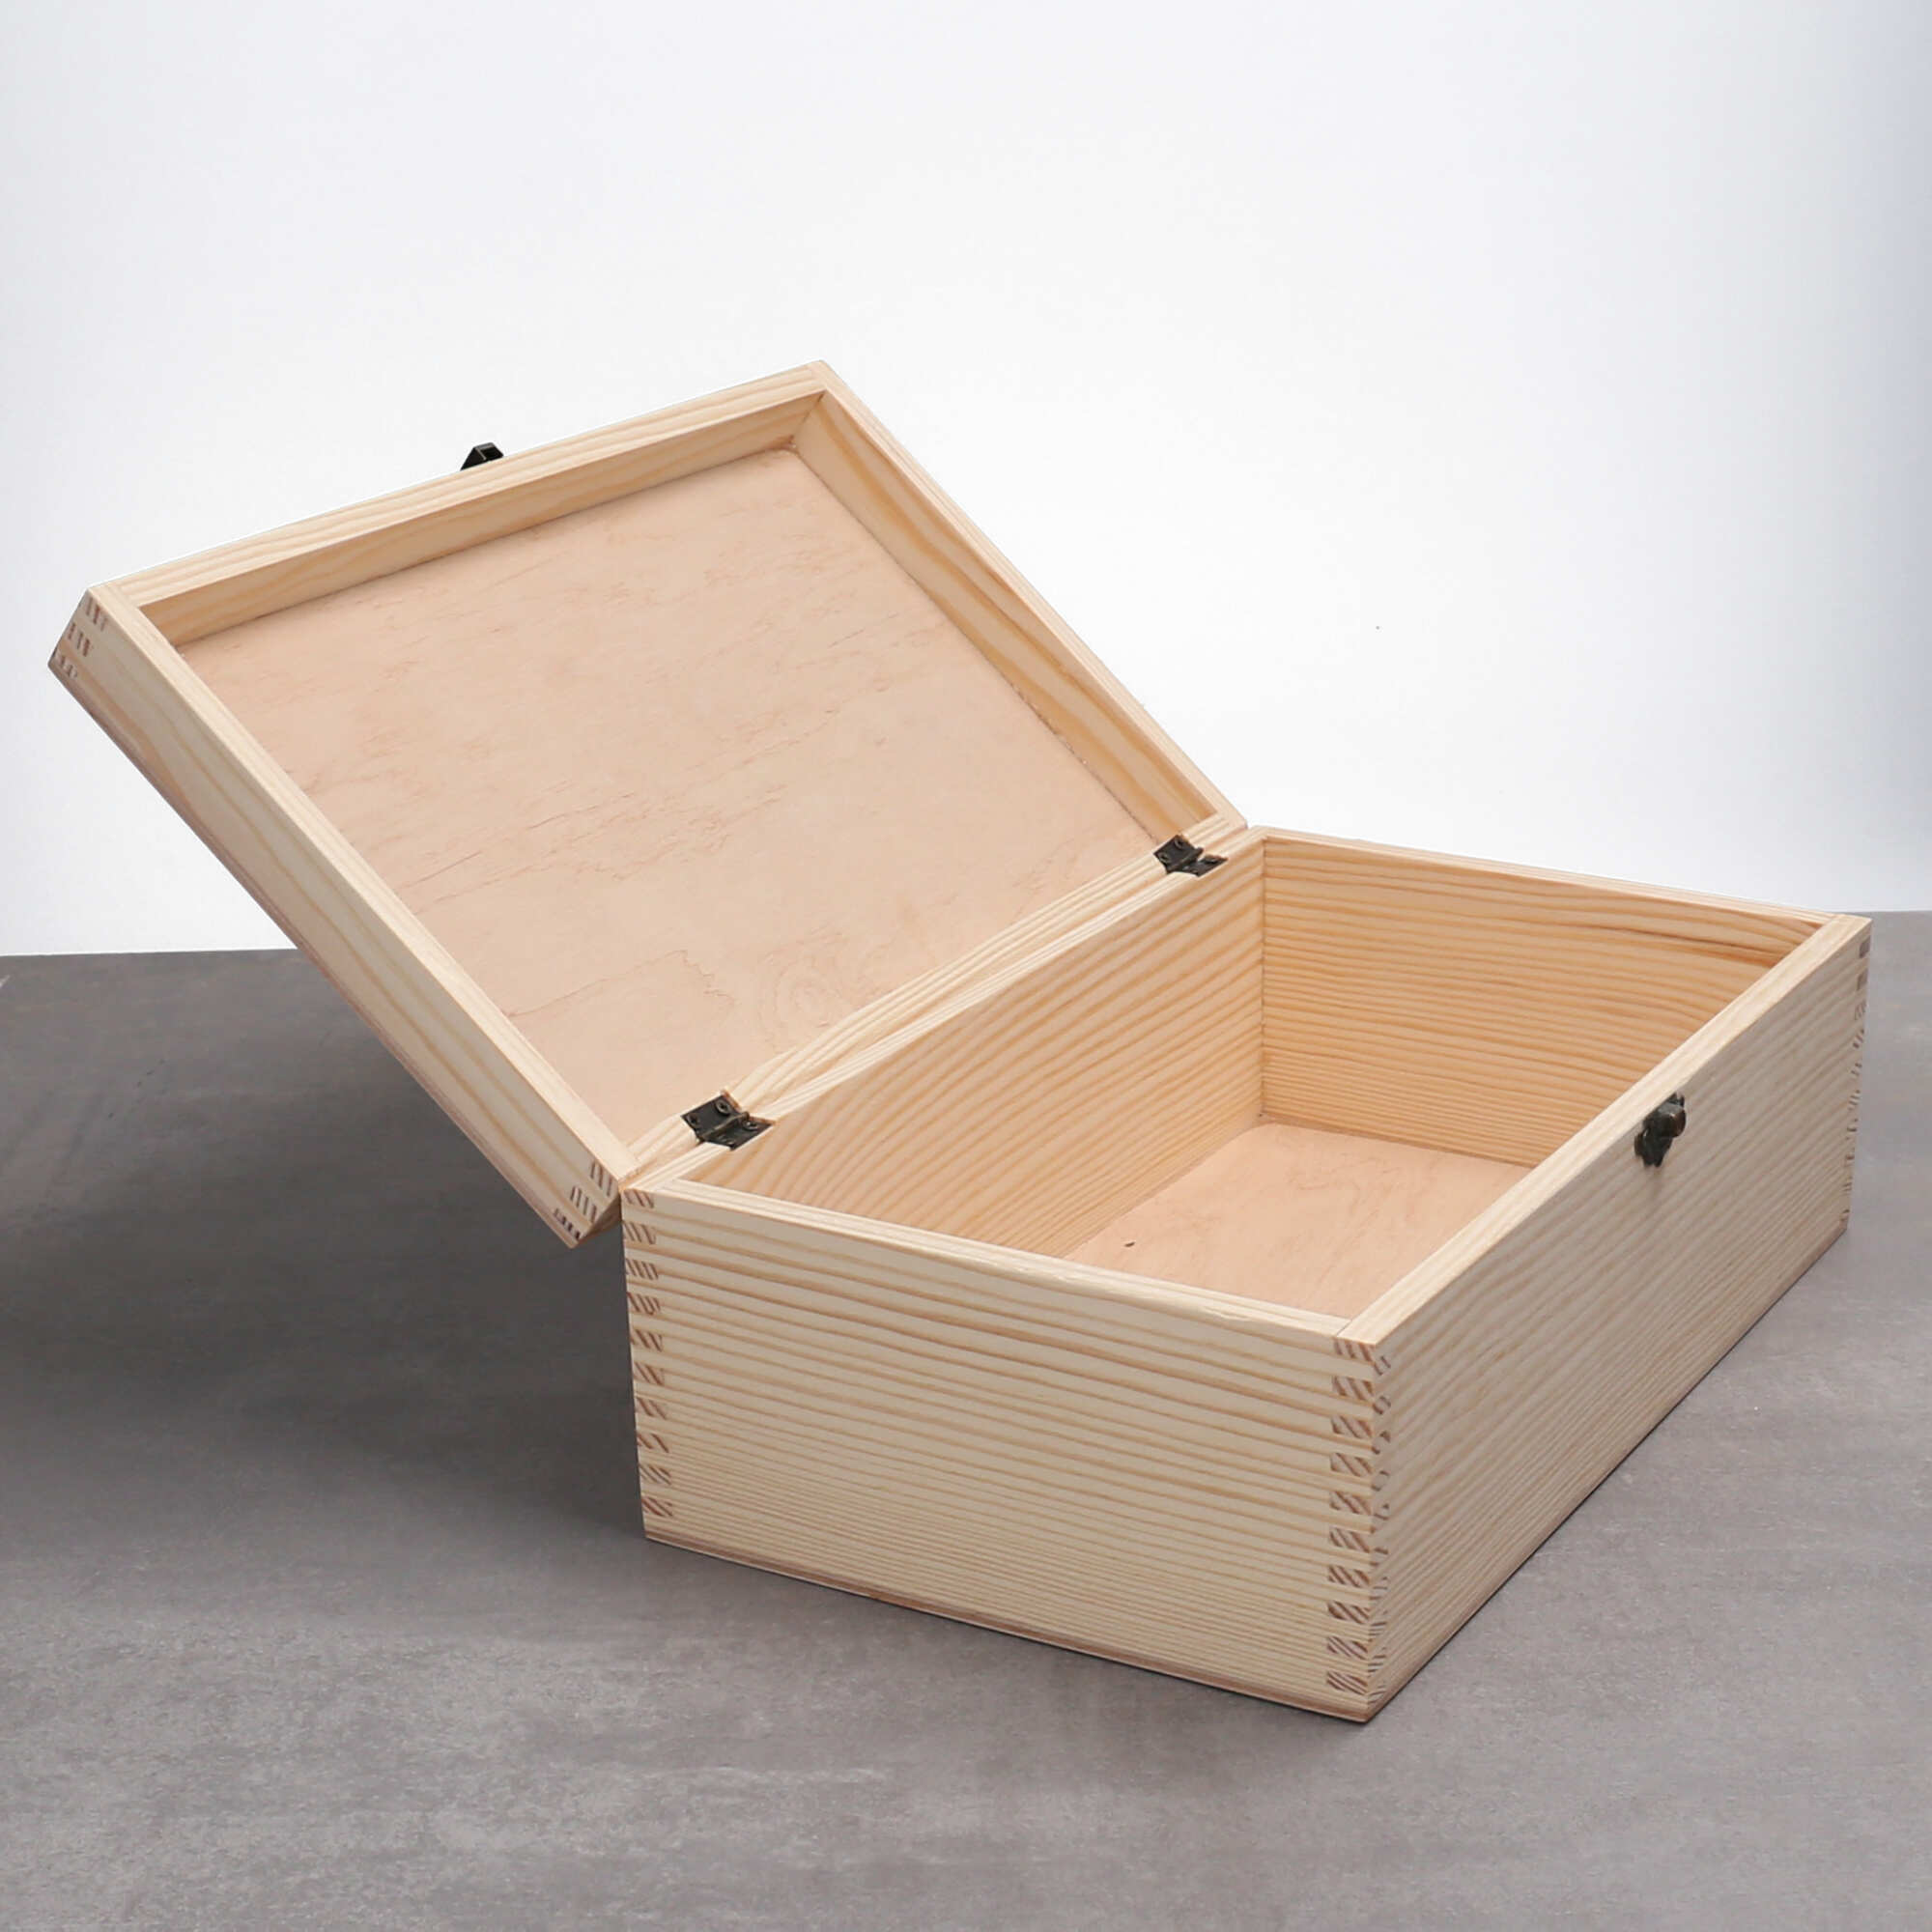 Holzbox personalisiert mit Namen, Text oder Foto für die Aufbewahrung von Gegenständen